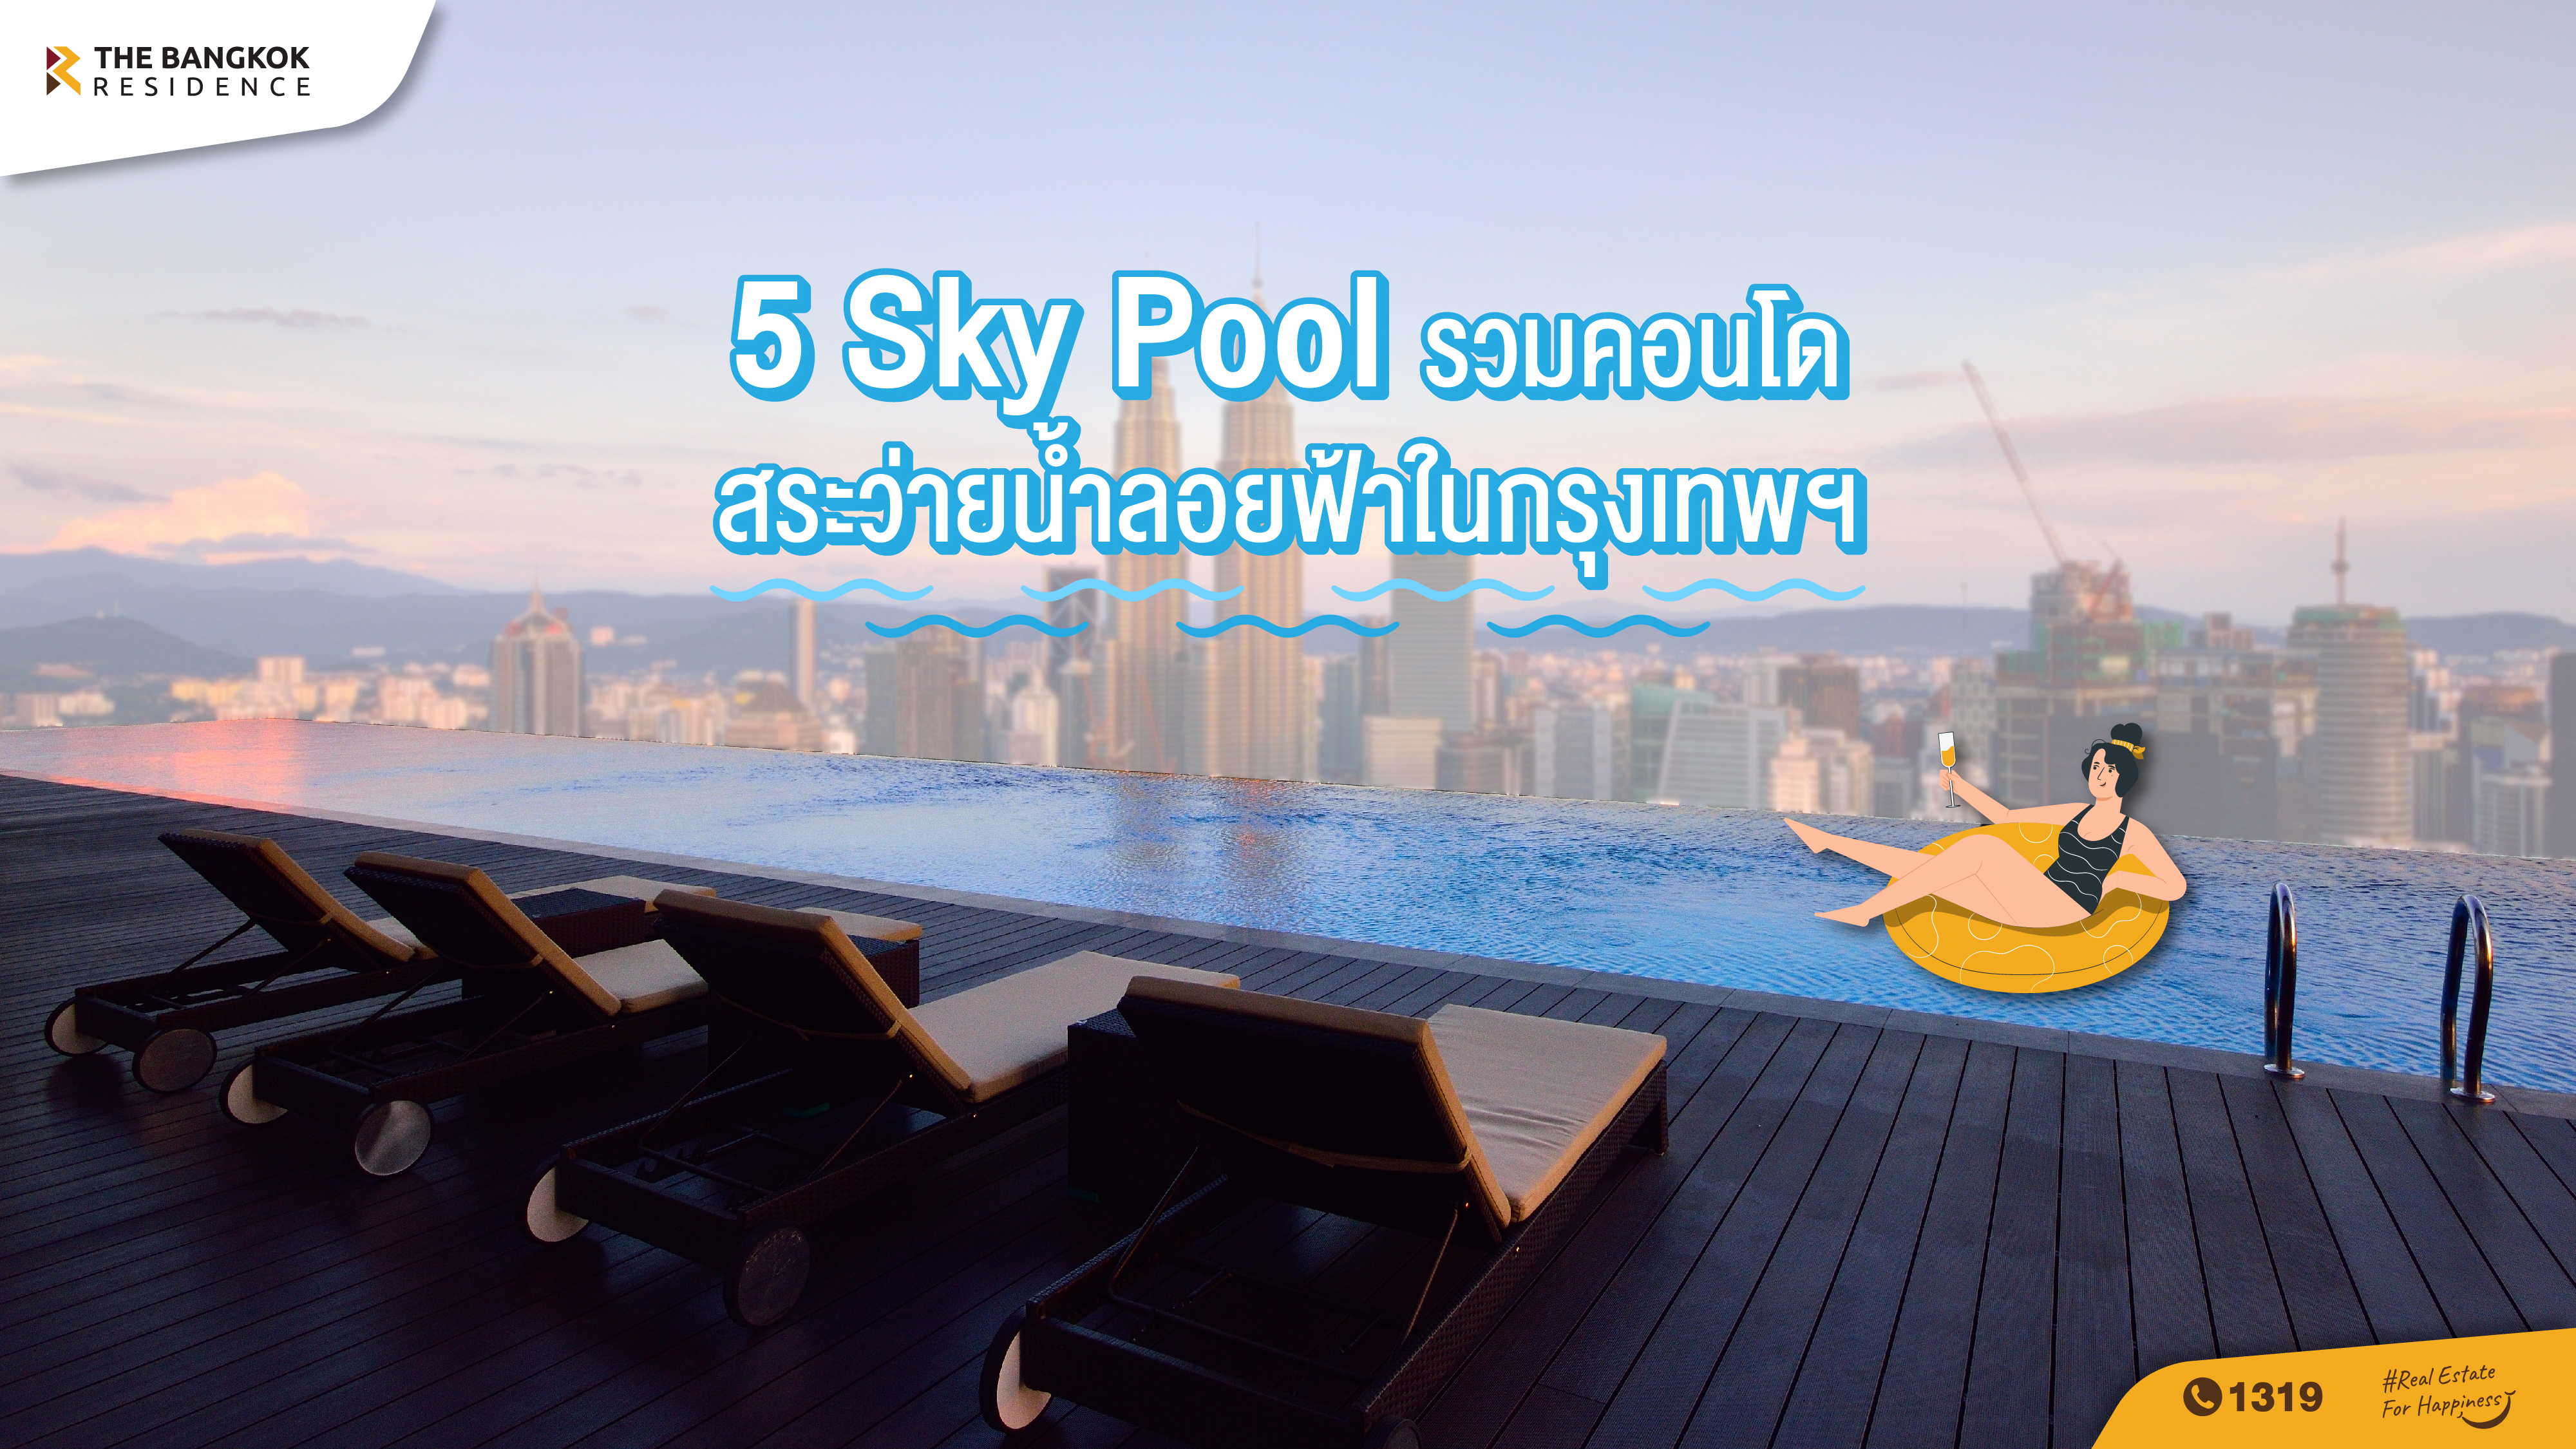 5 Sky Pool รวมคอนโดมีสระว่ายน้ำลอยฟ้าในกรุงเทพฯ  